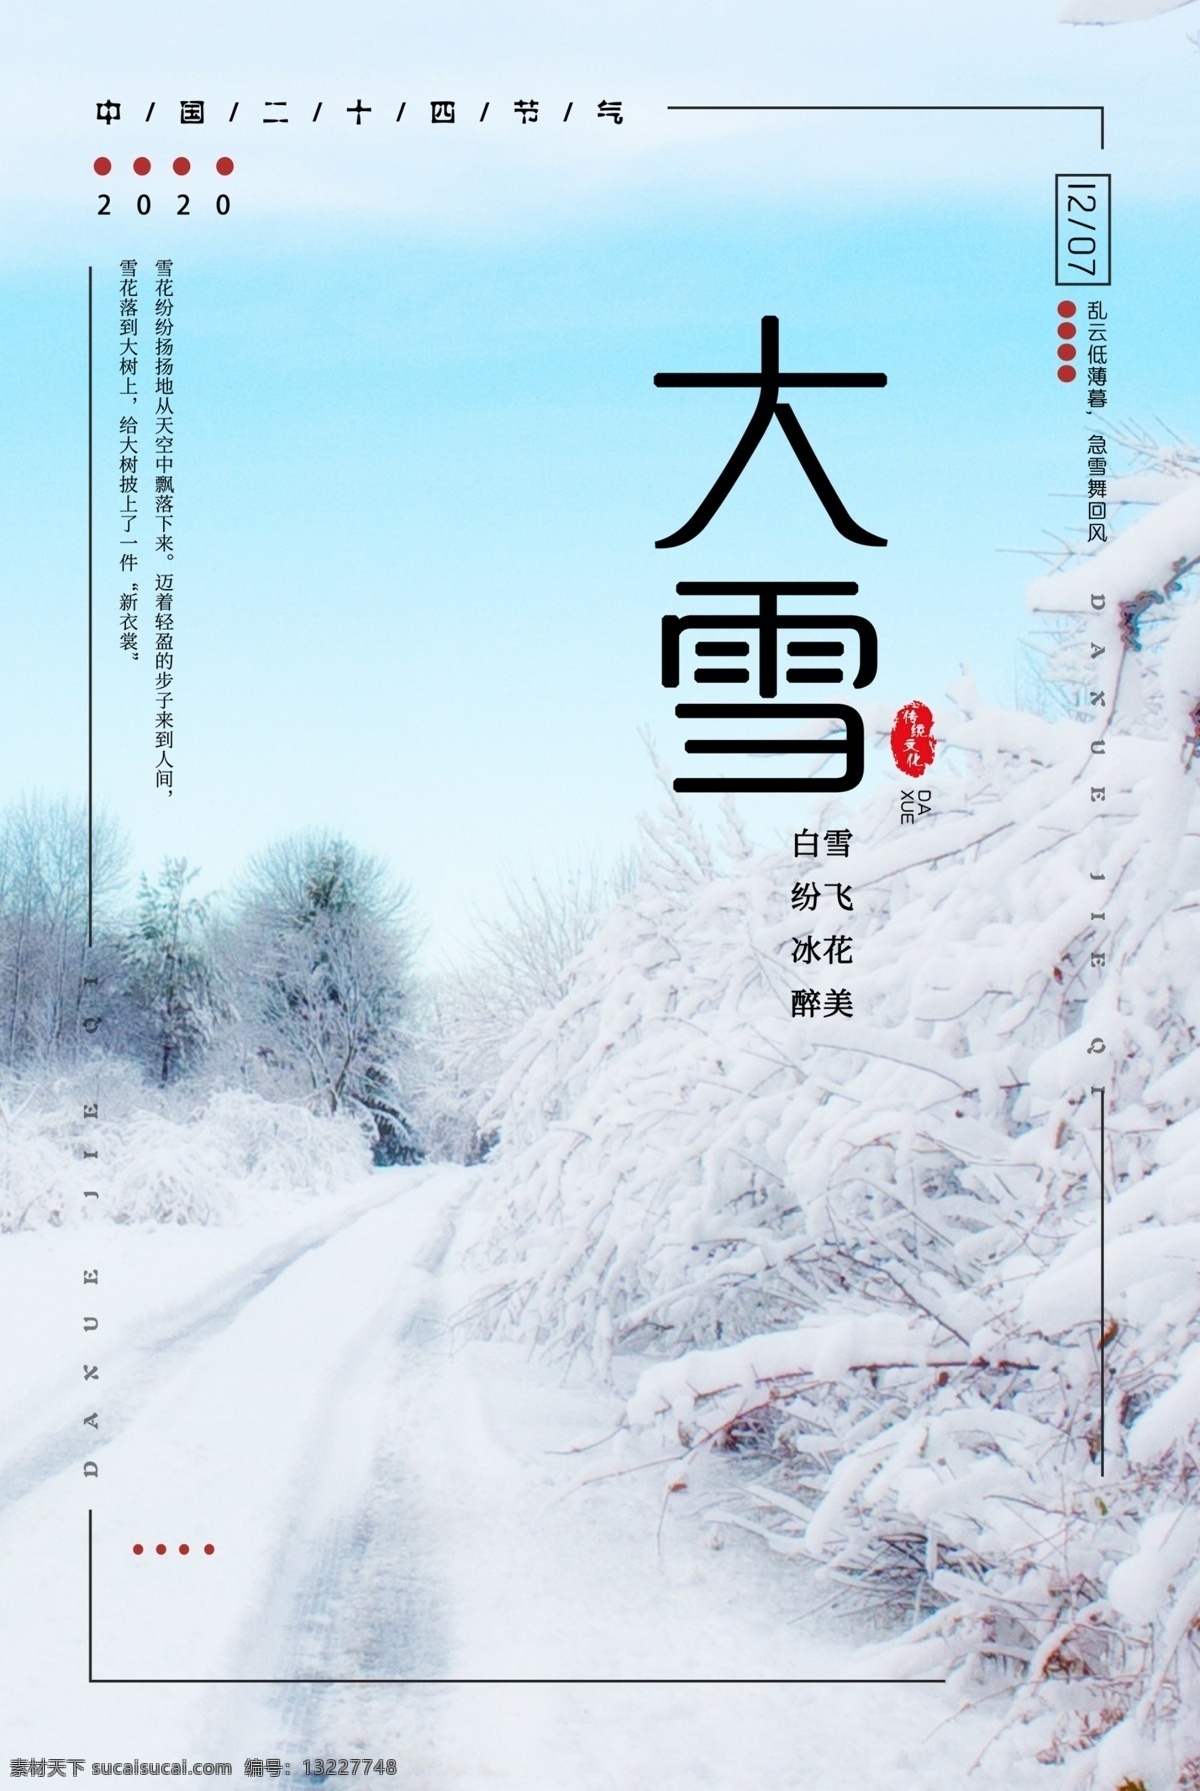 大雪 唯美 传统文化图片 传统文化 招贴设计 写实风格 节气海报